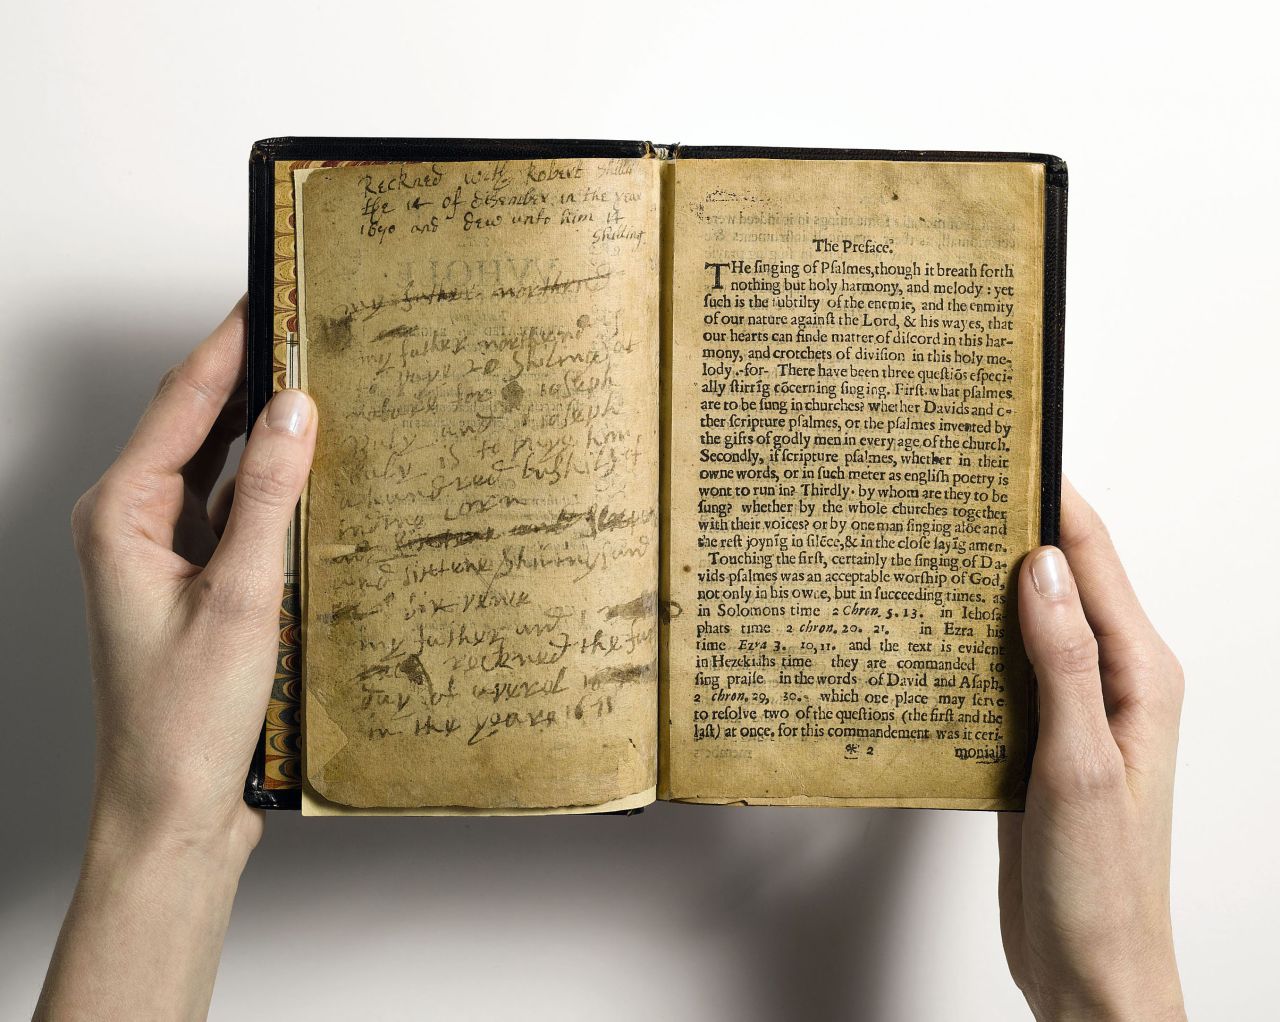 Por primera vez desde 1947 y por segunda vez desde 1894, una copia del 'Libro de Salmos de la Bahía' es subastada. En 1947, fue vendida por el mayor precio de cualquier otro libro impreso ese entonces: 151.000 dólares.